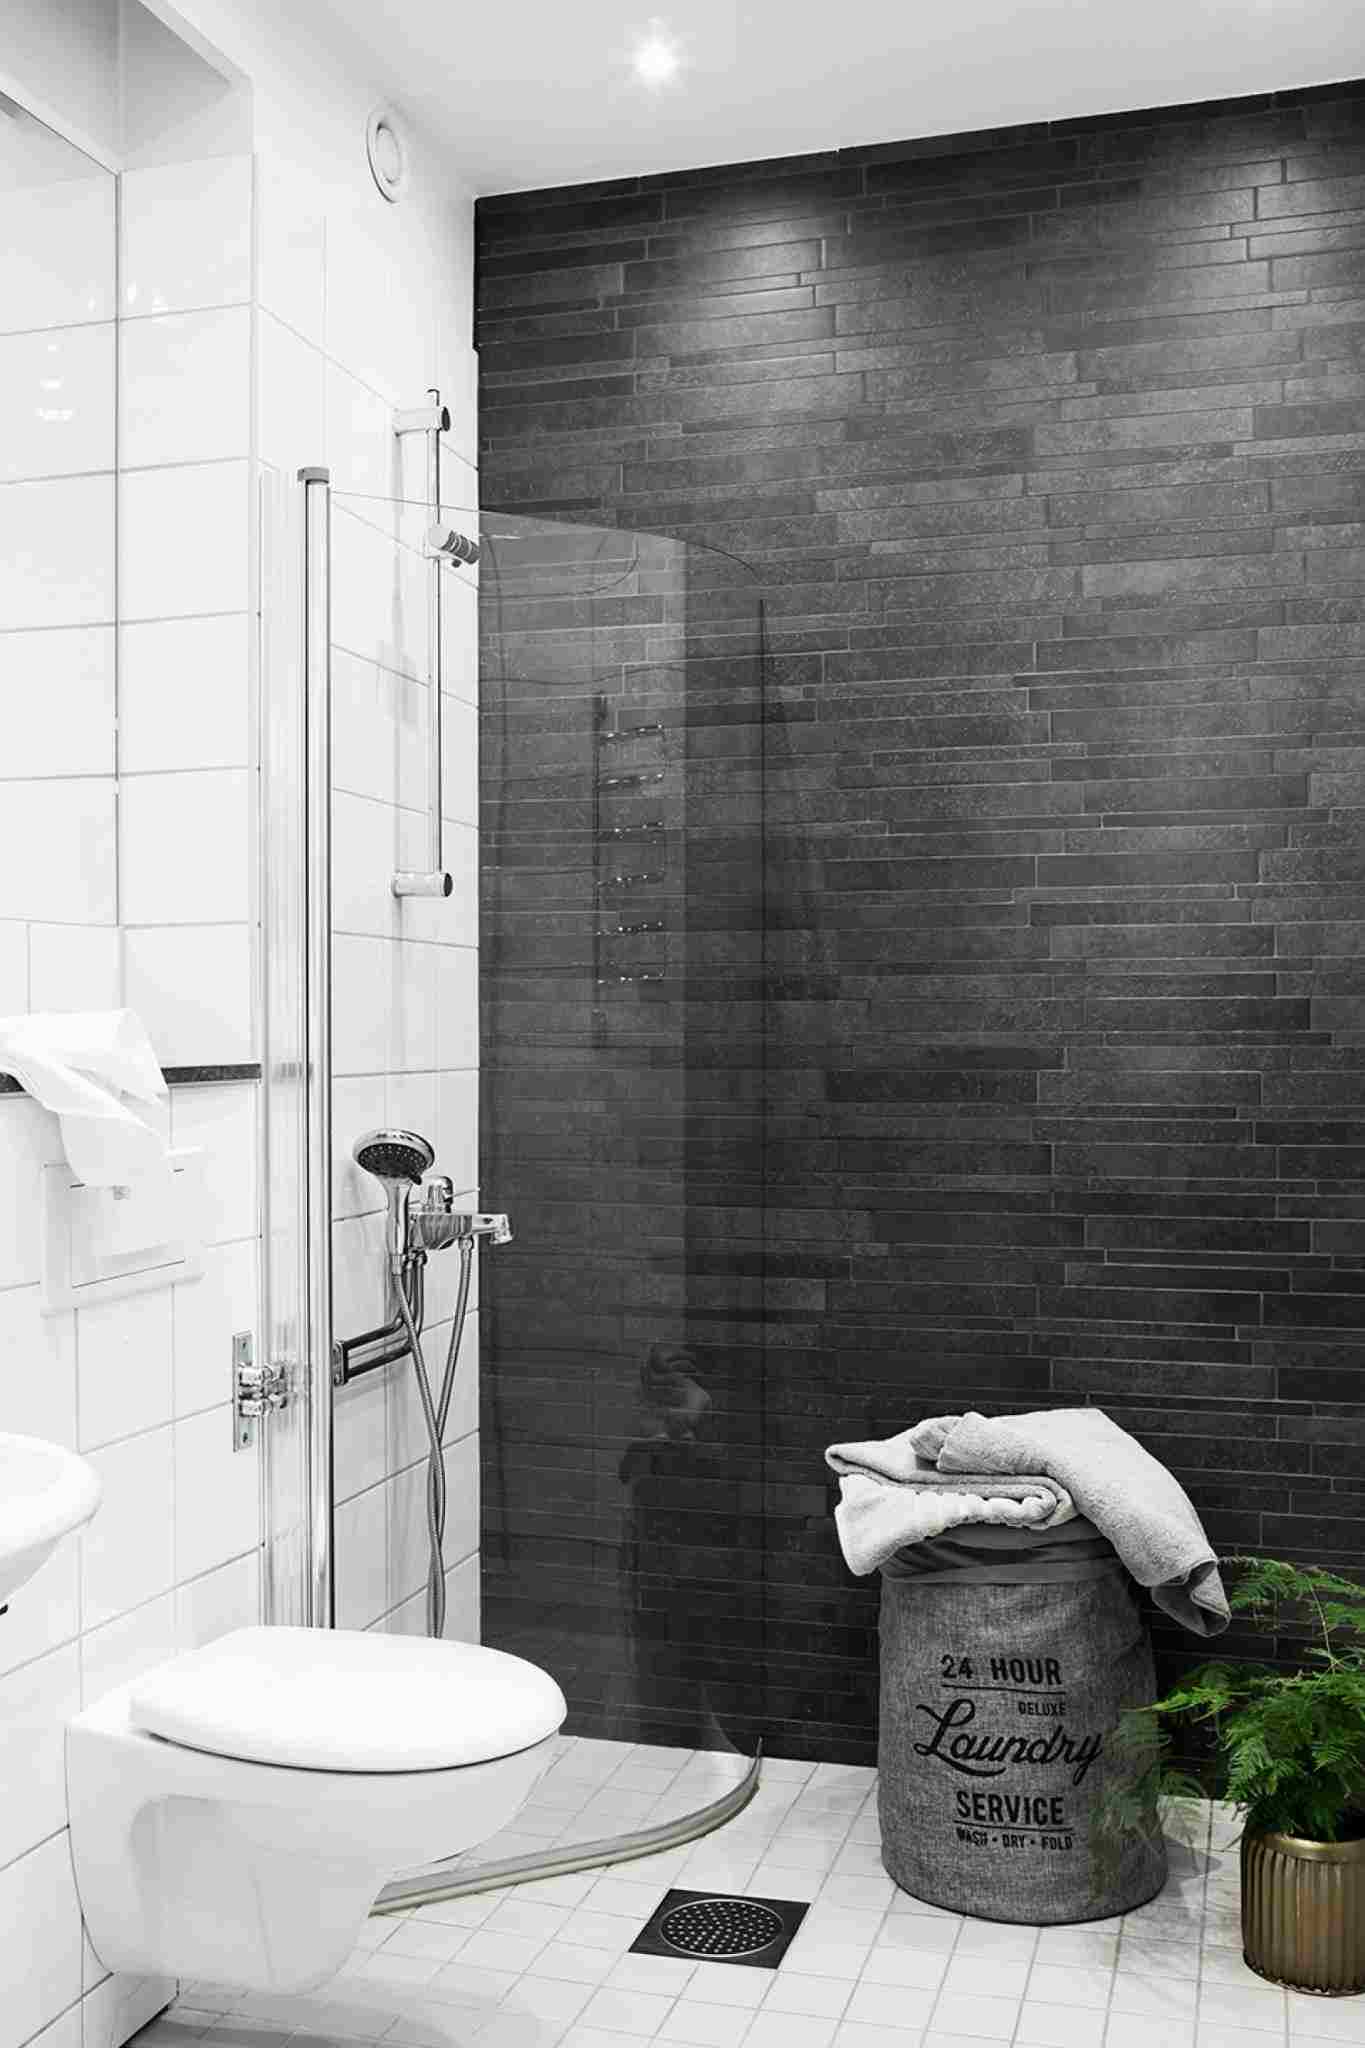 Badrum i grå liten duschkabin tvättkorg som inrättar idéer för små rum